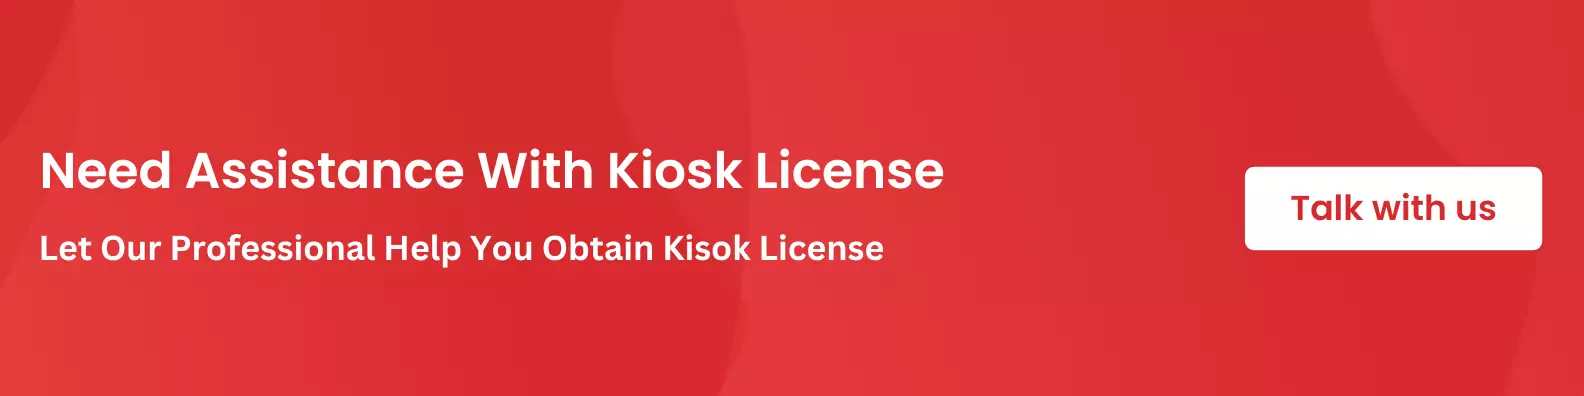 Kiosk License CTA banner